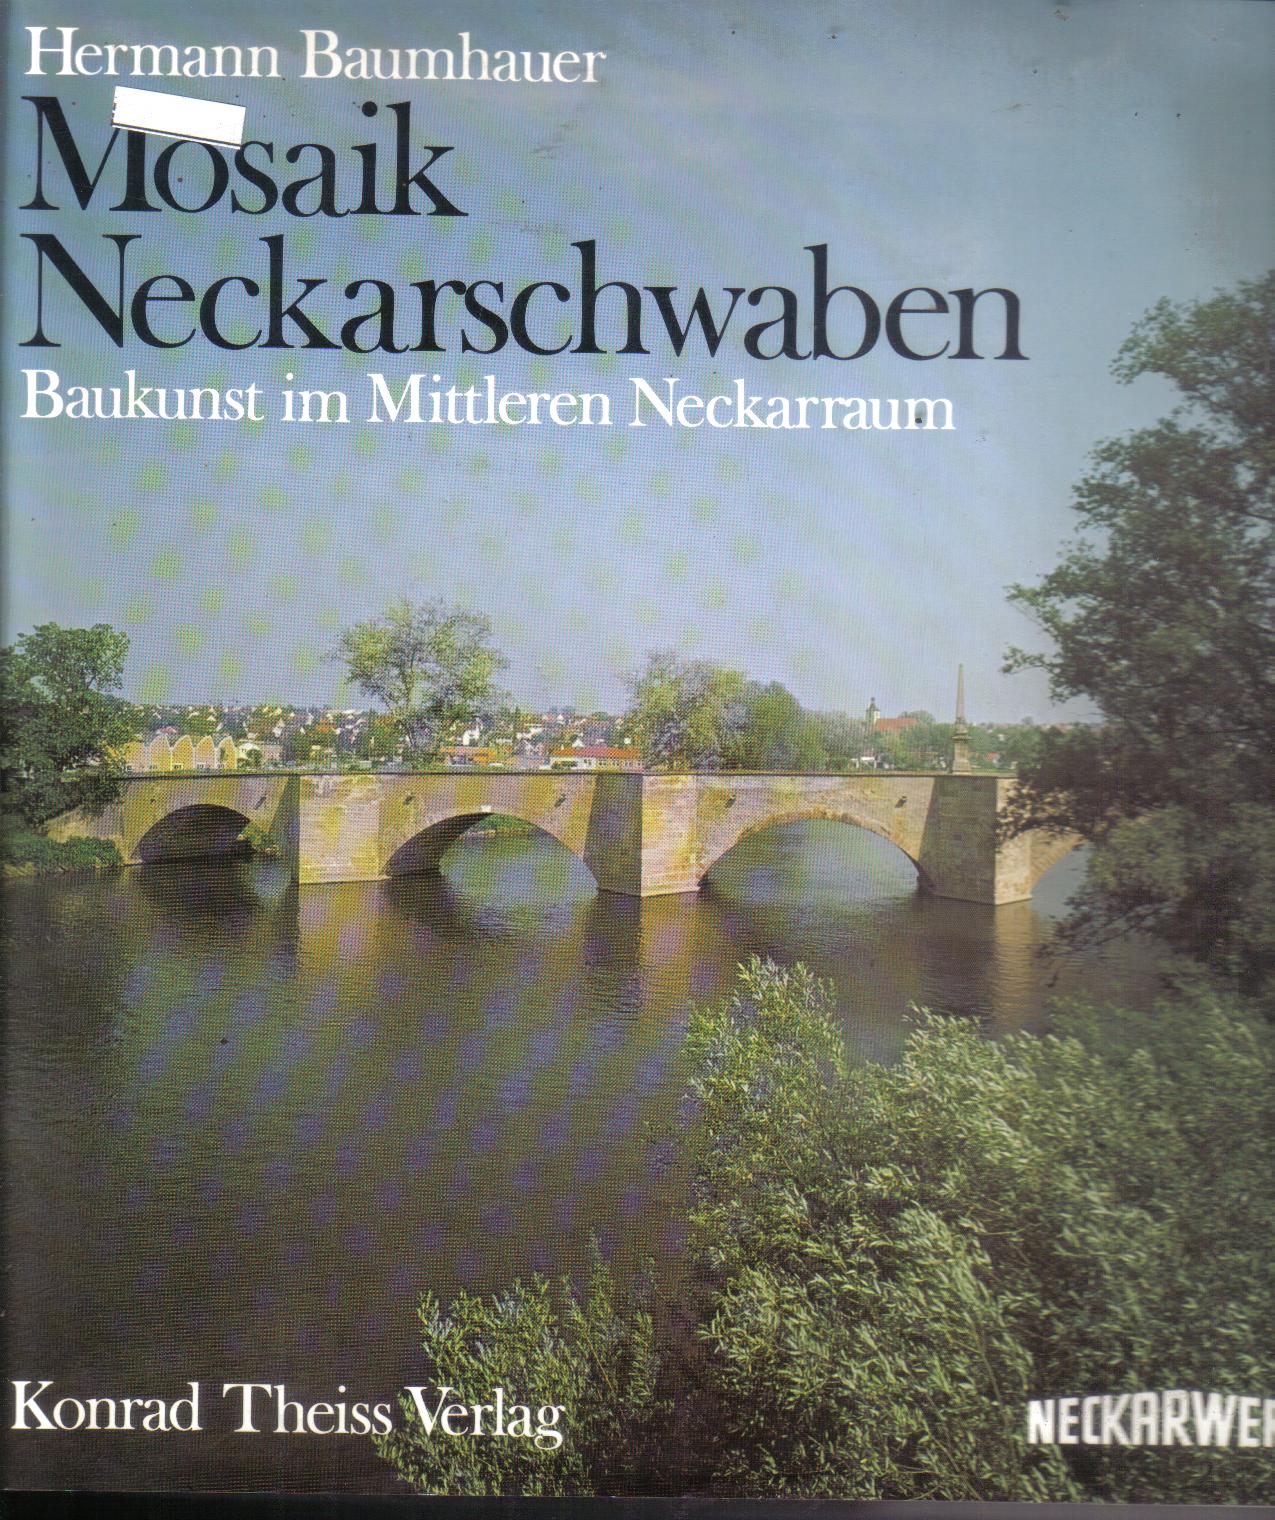 Mosaik NeckarschwabenHermann Baumhauer